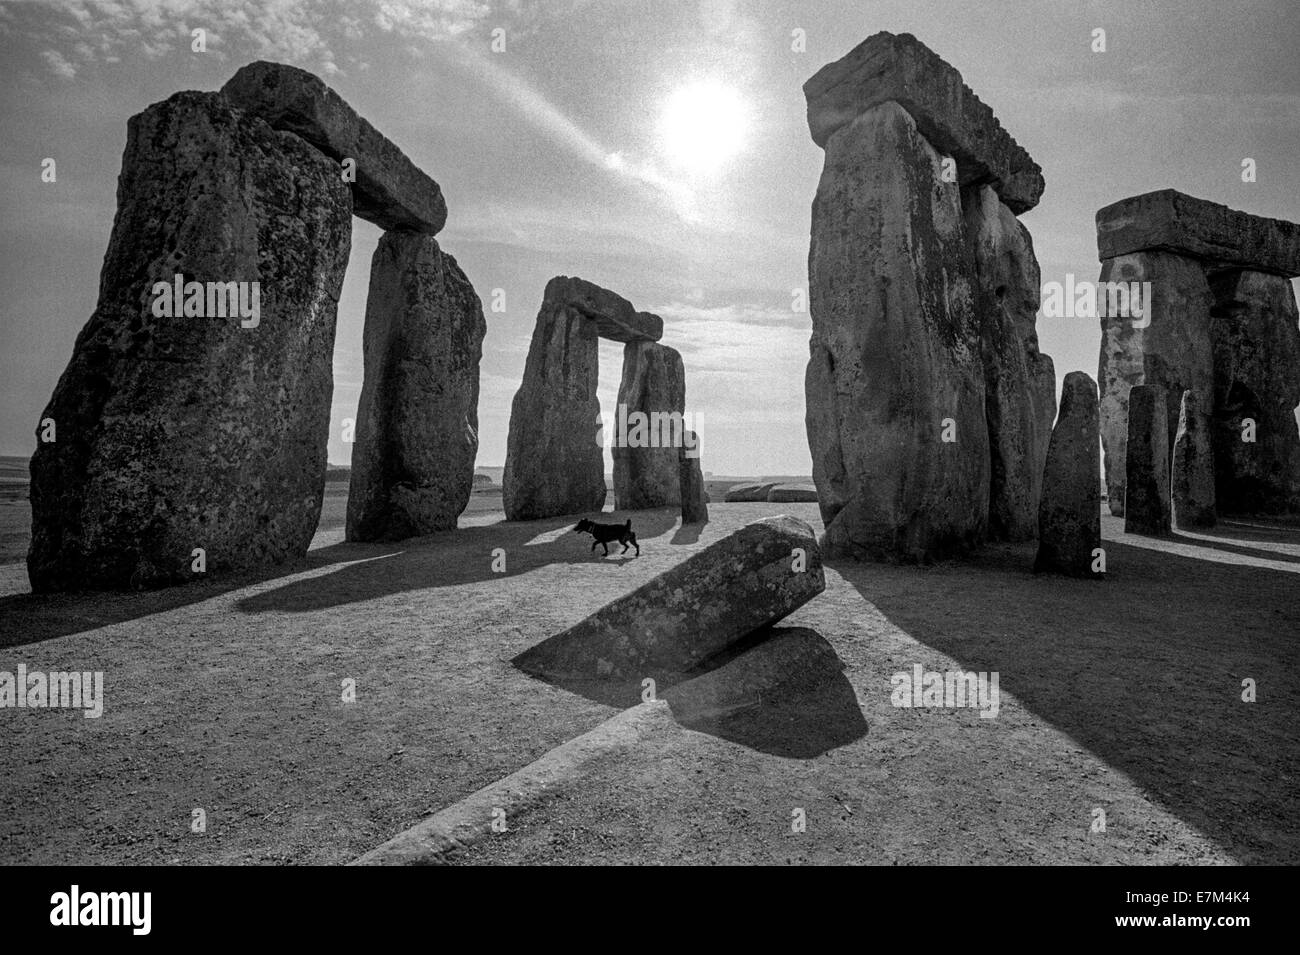 En fin d'après-midi, un chien errant promenades dans Stonehenge, un monument préhistorique situé dans le Wiltshire, Angleterre, dans la plaine de Salisbury. Note de grandes ombres. Banque D'Images